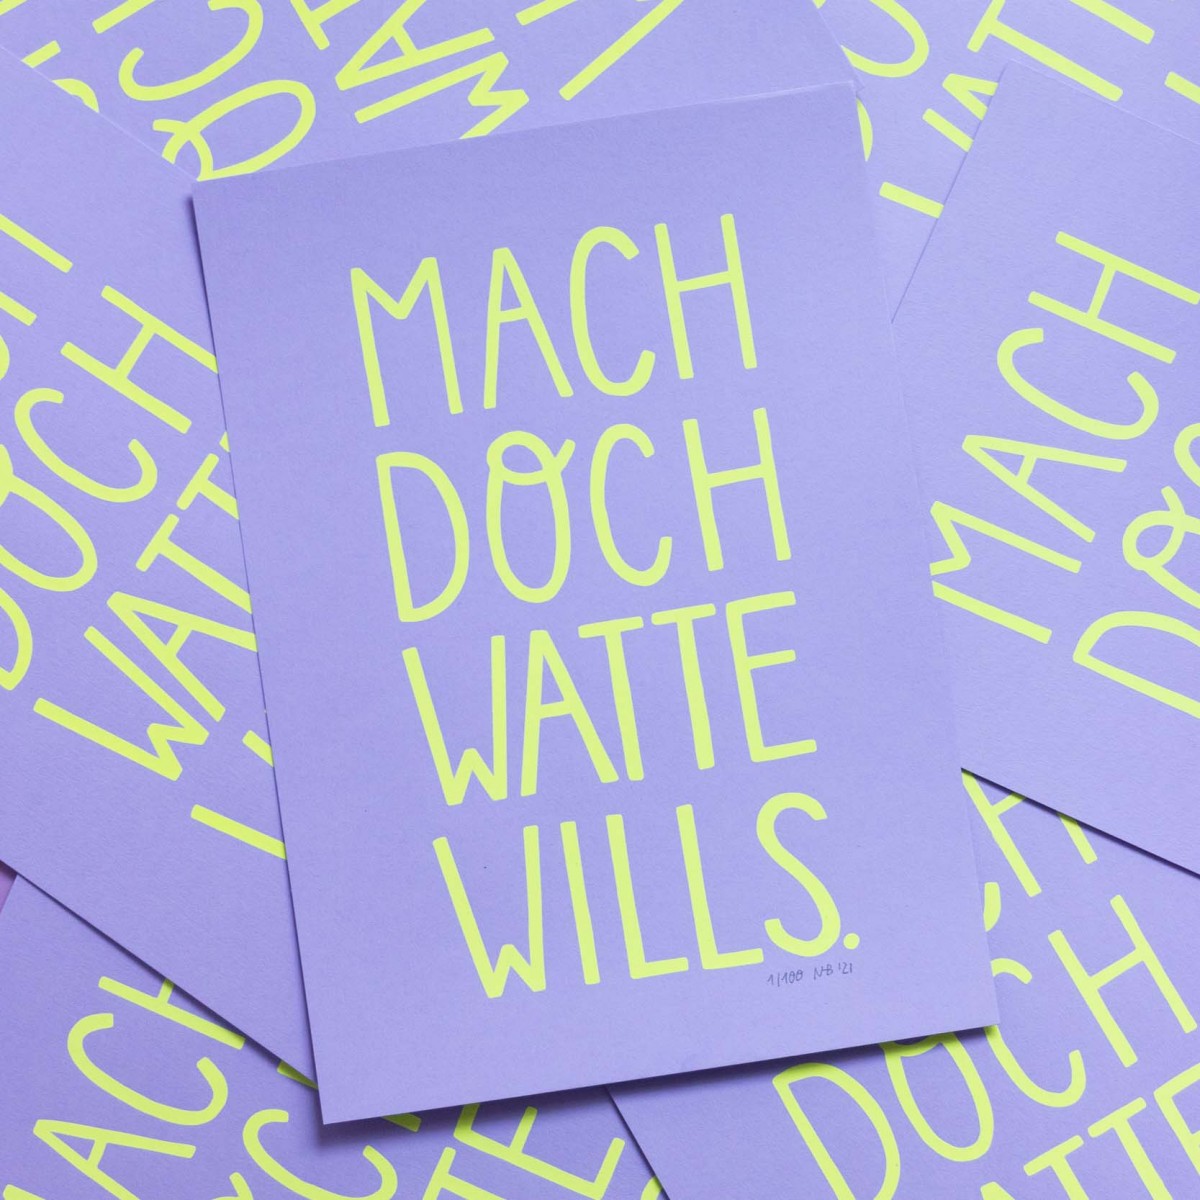 Limited Edition Siebdruck "Mach doch watte wills" - SMARACUJA